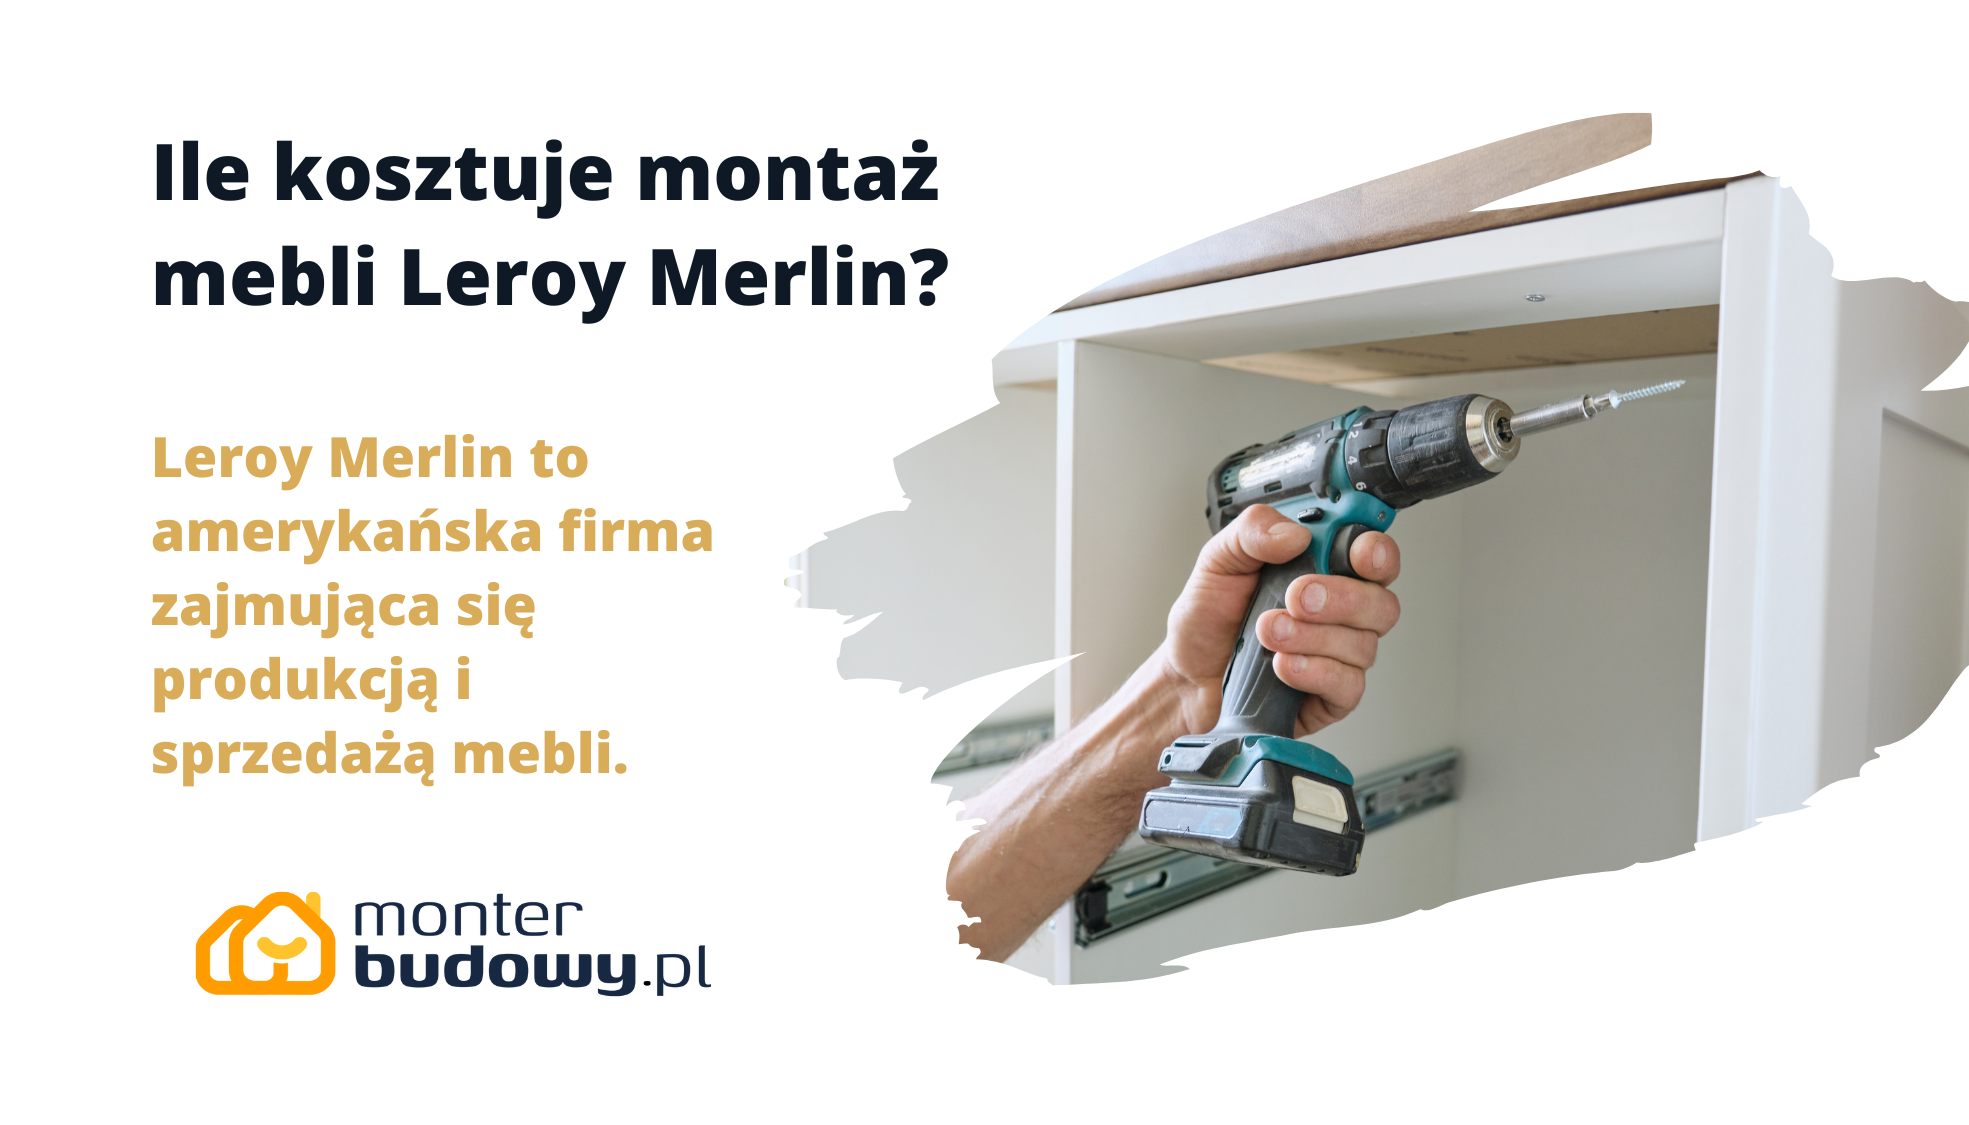 Ile kosztuje montaż mebli Leroy Merlin